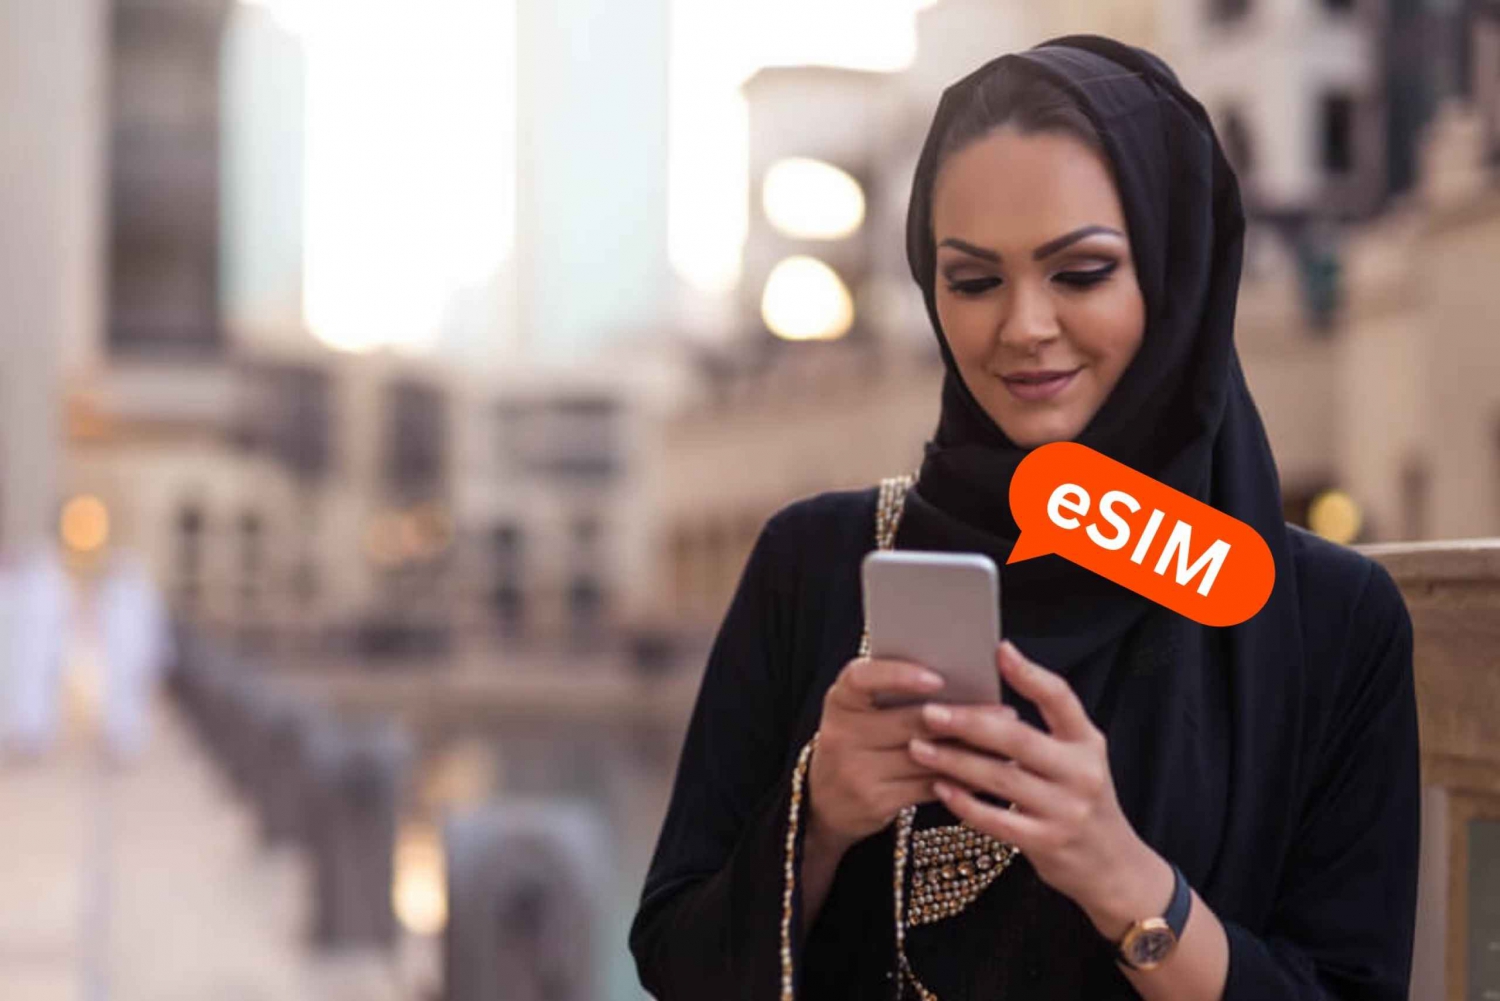 Mecca: Saudi Arabia eSIM Roaming Data Plan for Travelers